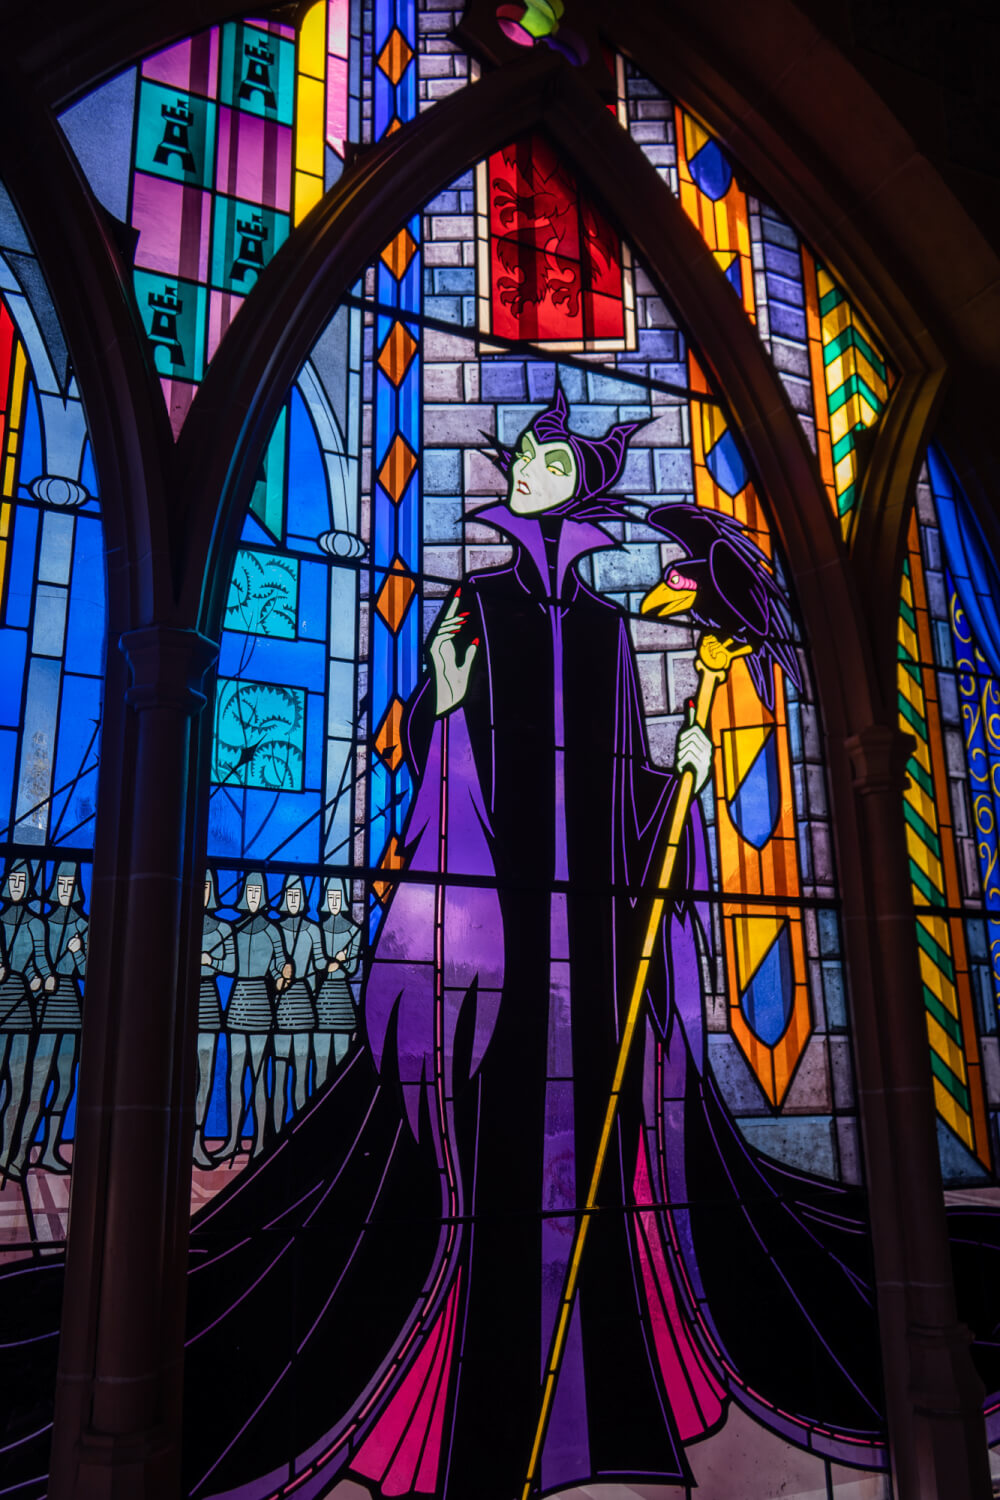 vetro Colorato all'interno di Disneyland Parigi, il castello di Disneyland Park a Marne la Vallee, Francia